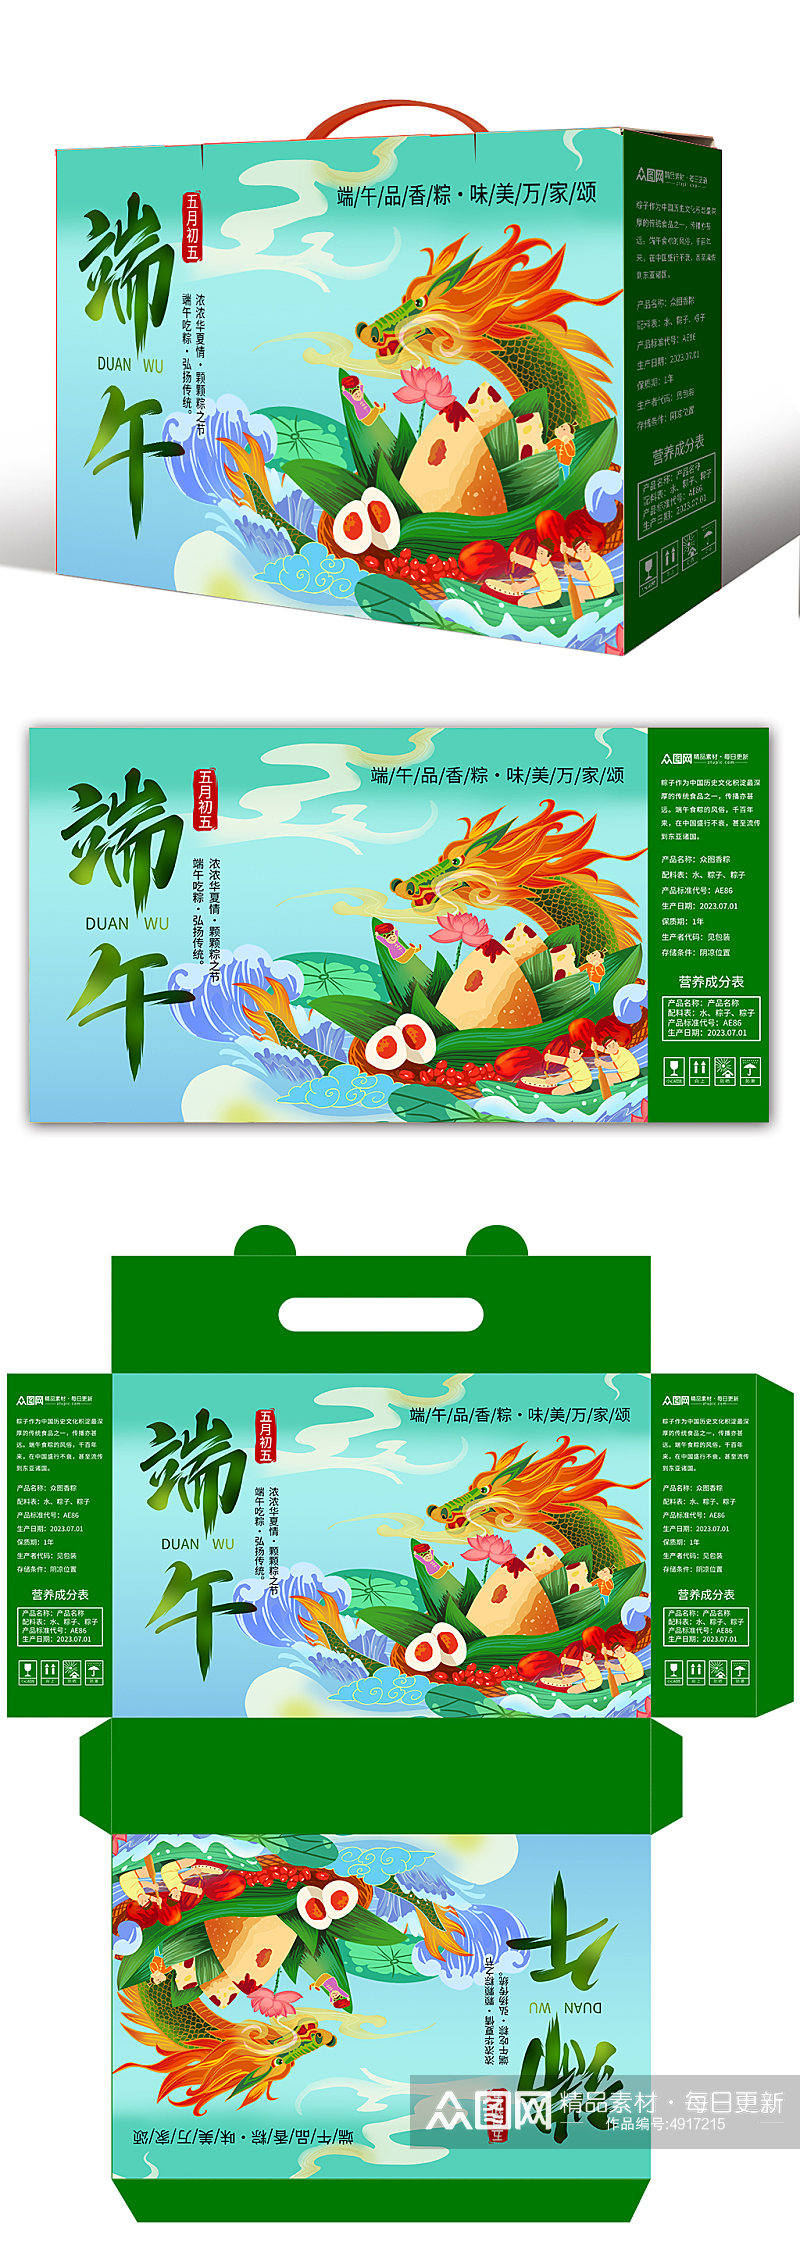 插画风端午节美食粽子包装礼盒设计素材